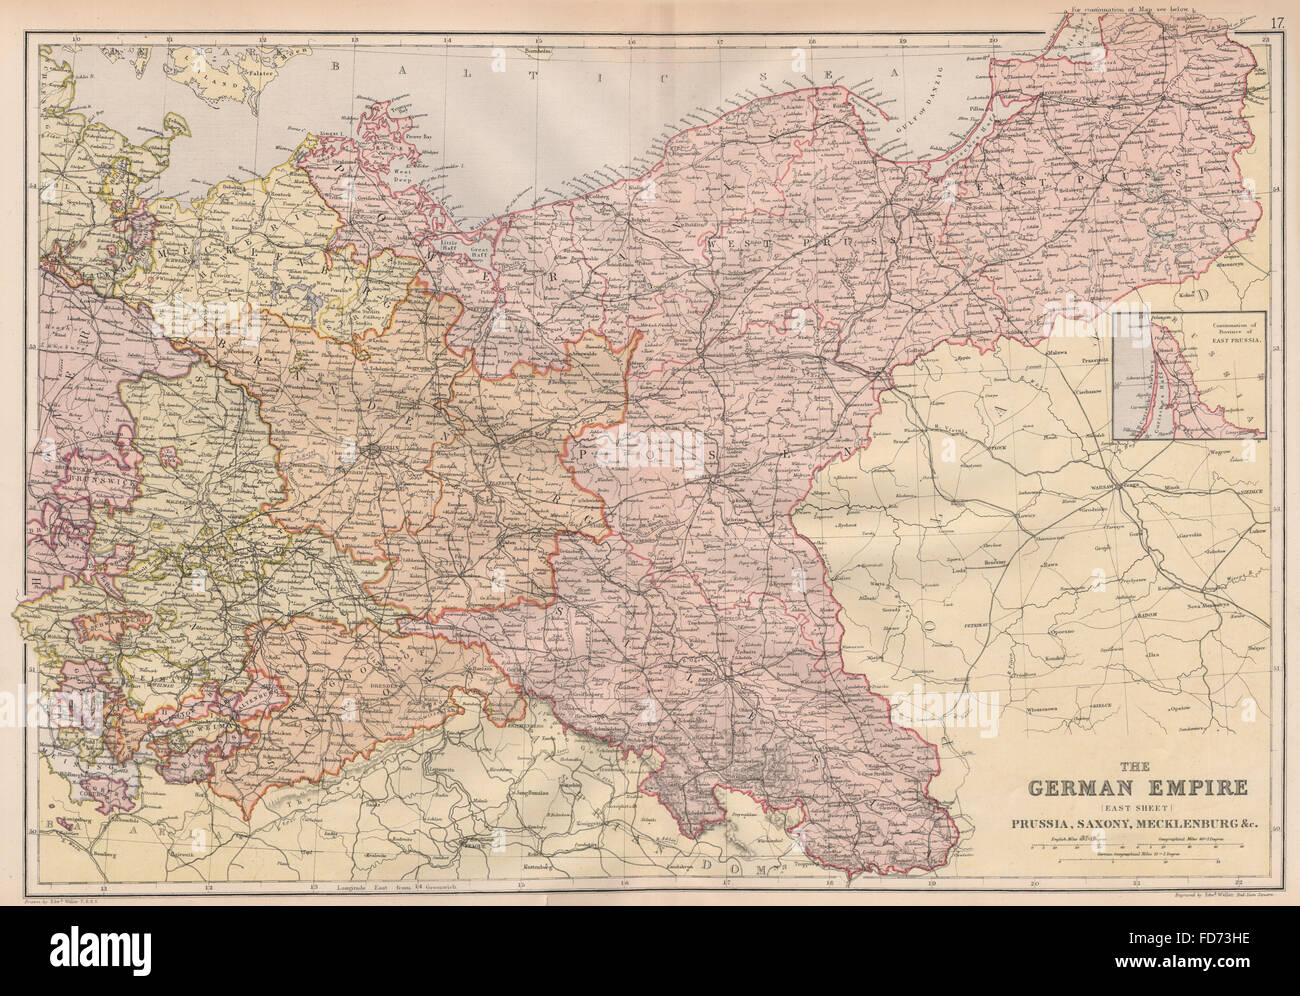 Imperio alemán medio: Prusia Sajonia Mecklenburg.Polonia.ferrocarriles. BLACKIE 1882 mapa Foto de stock